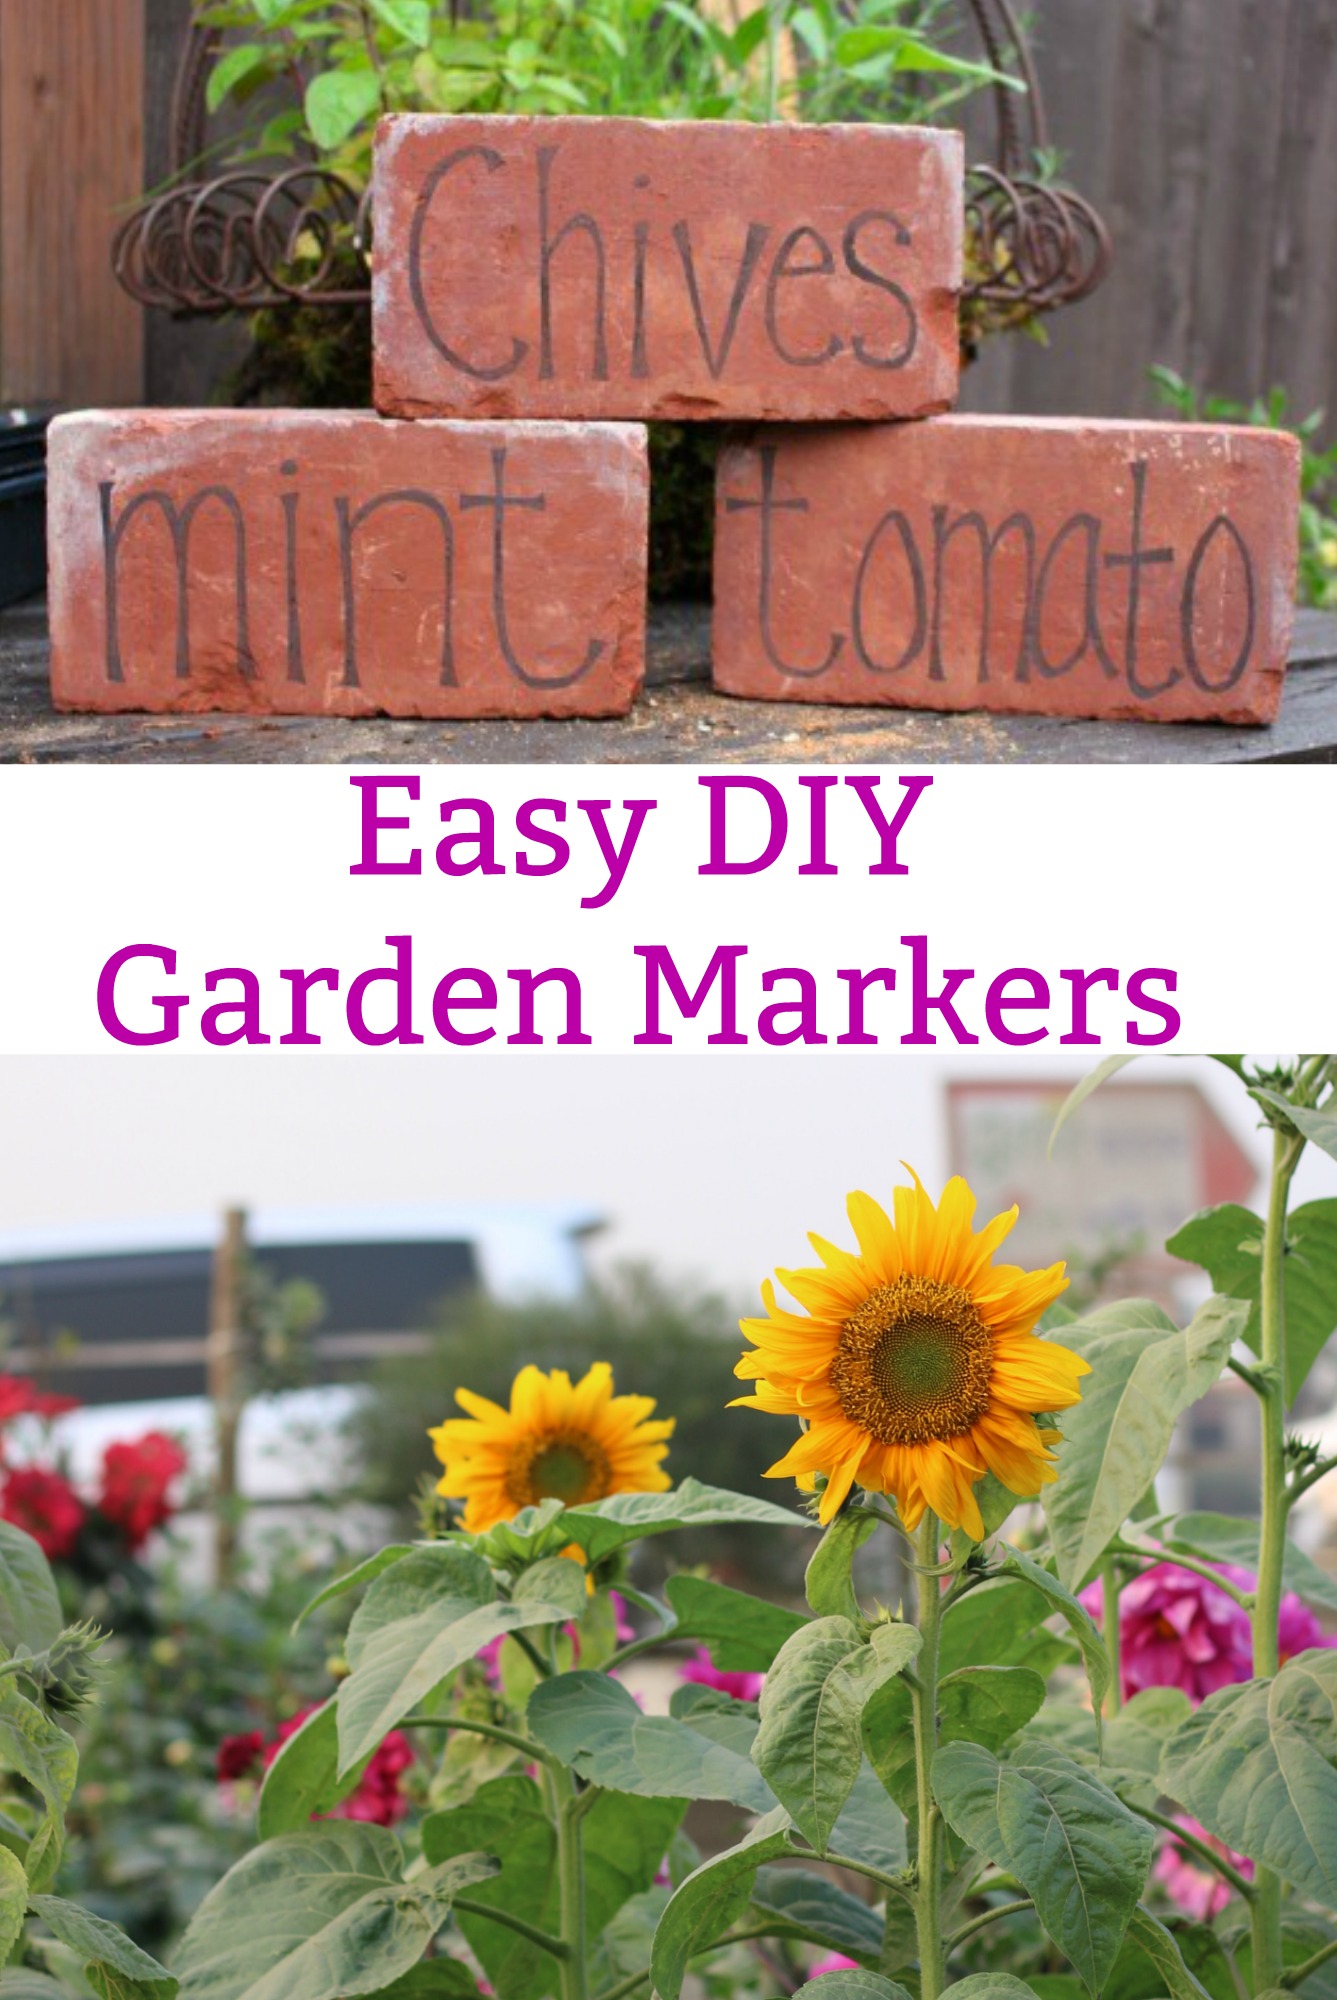 DIY Garden Markers Using Bricks